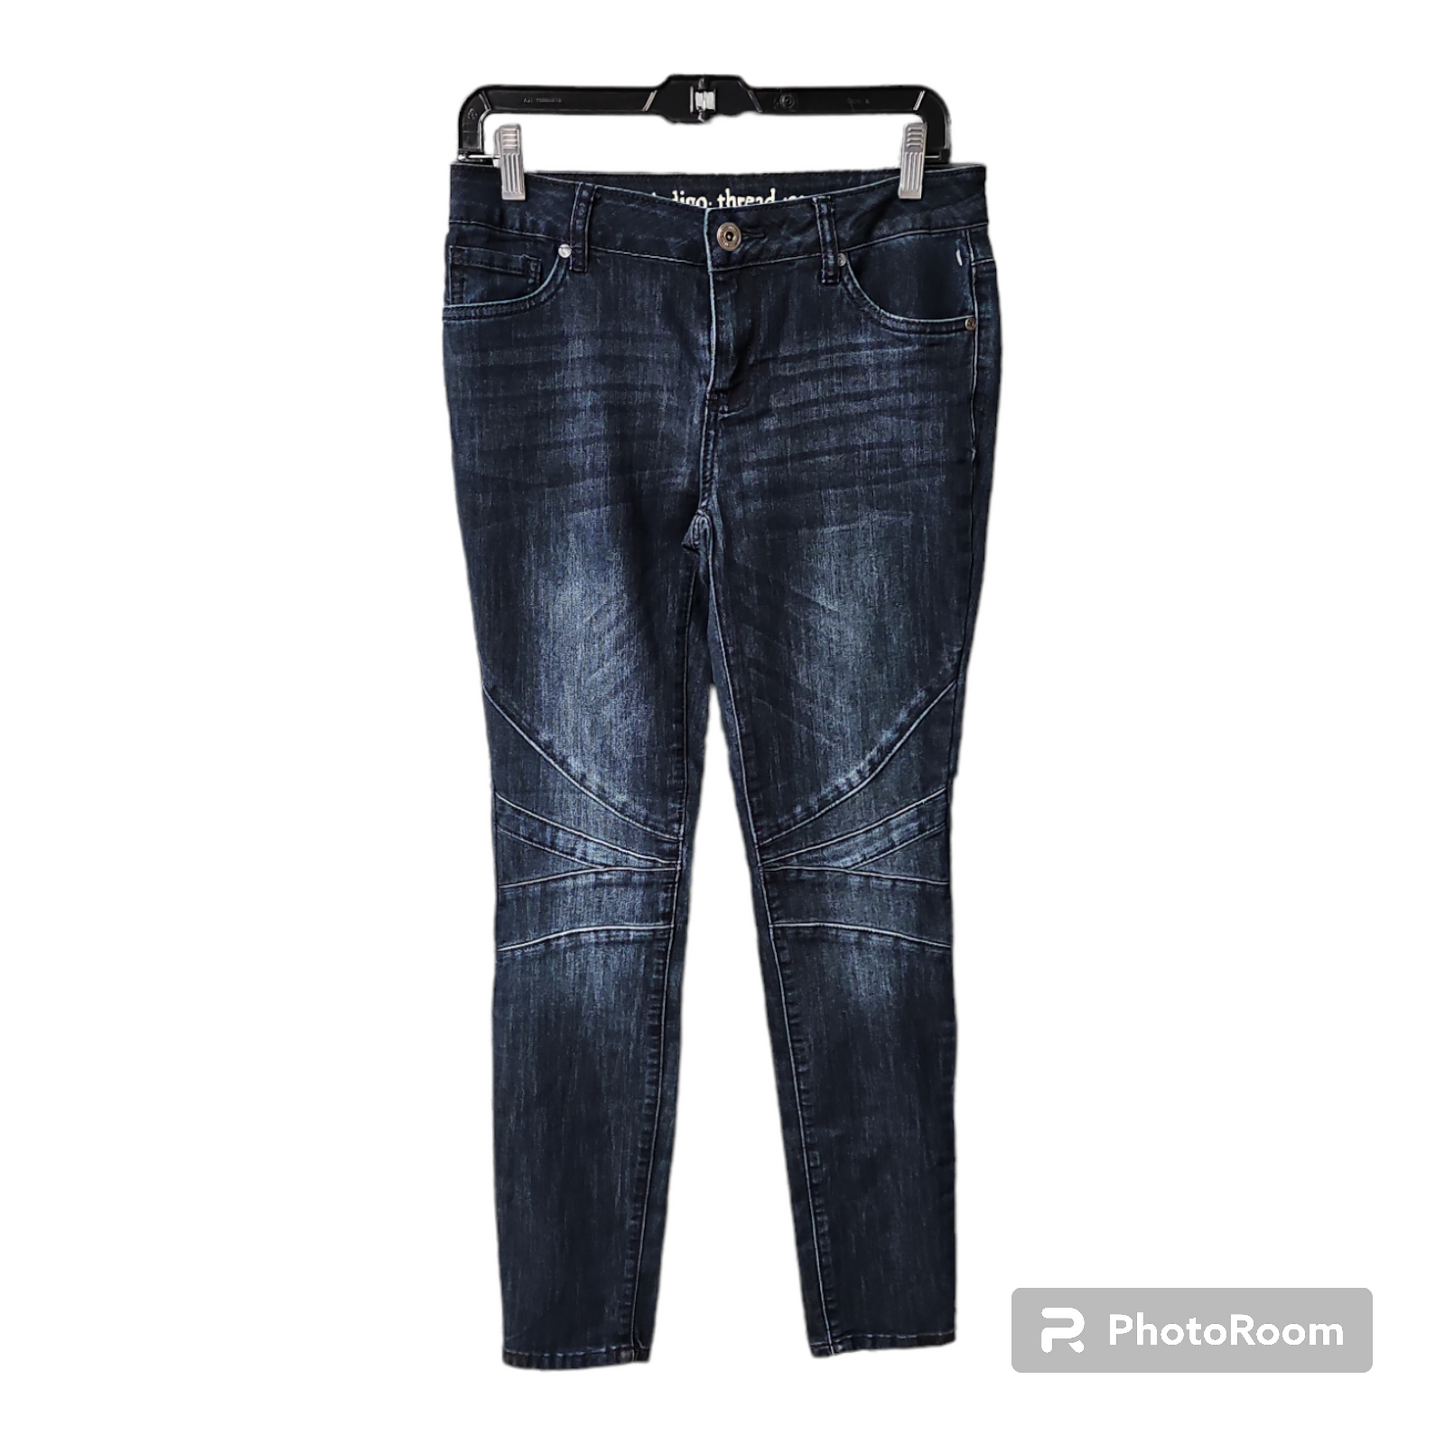 Jeans Skinny By Indigo Thread  Size: 4